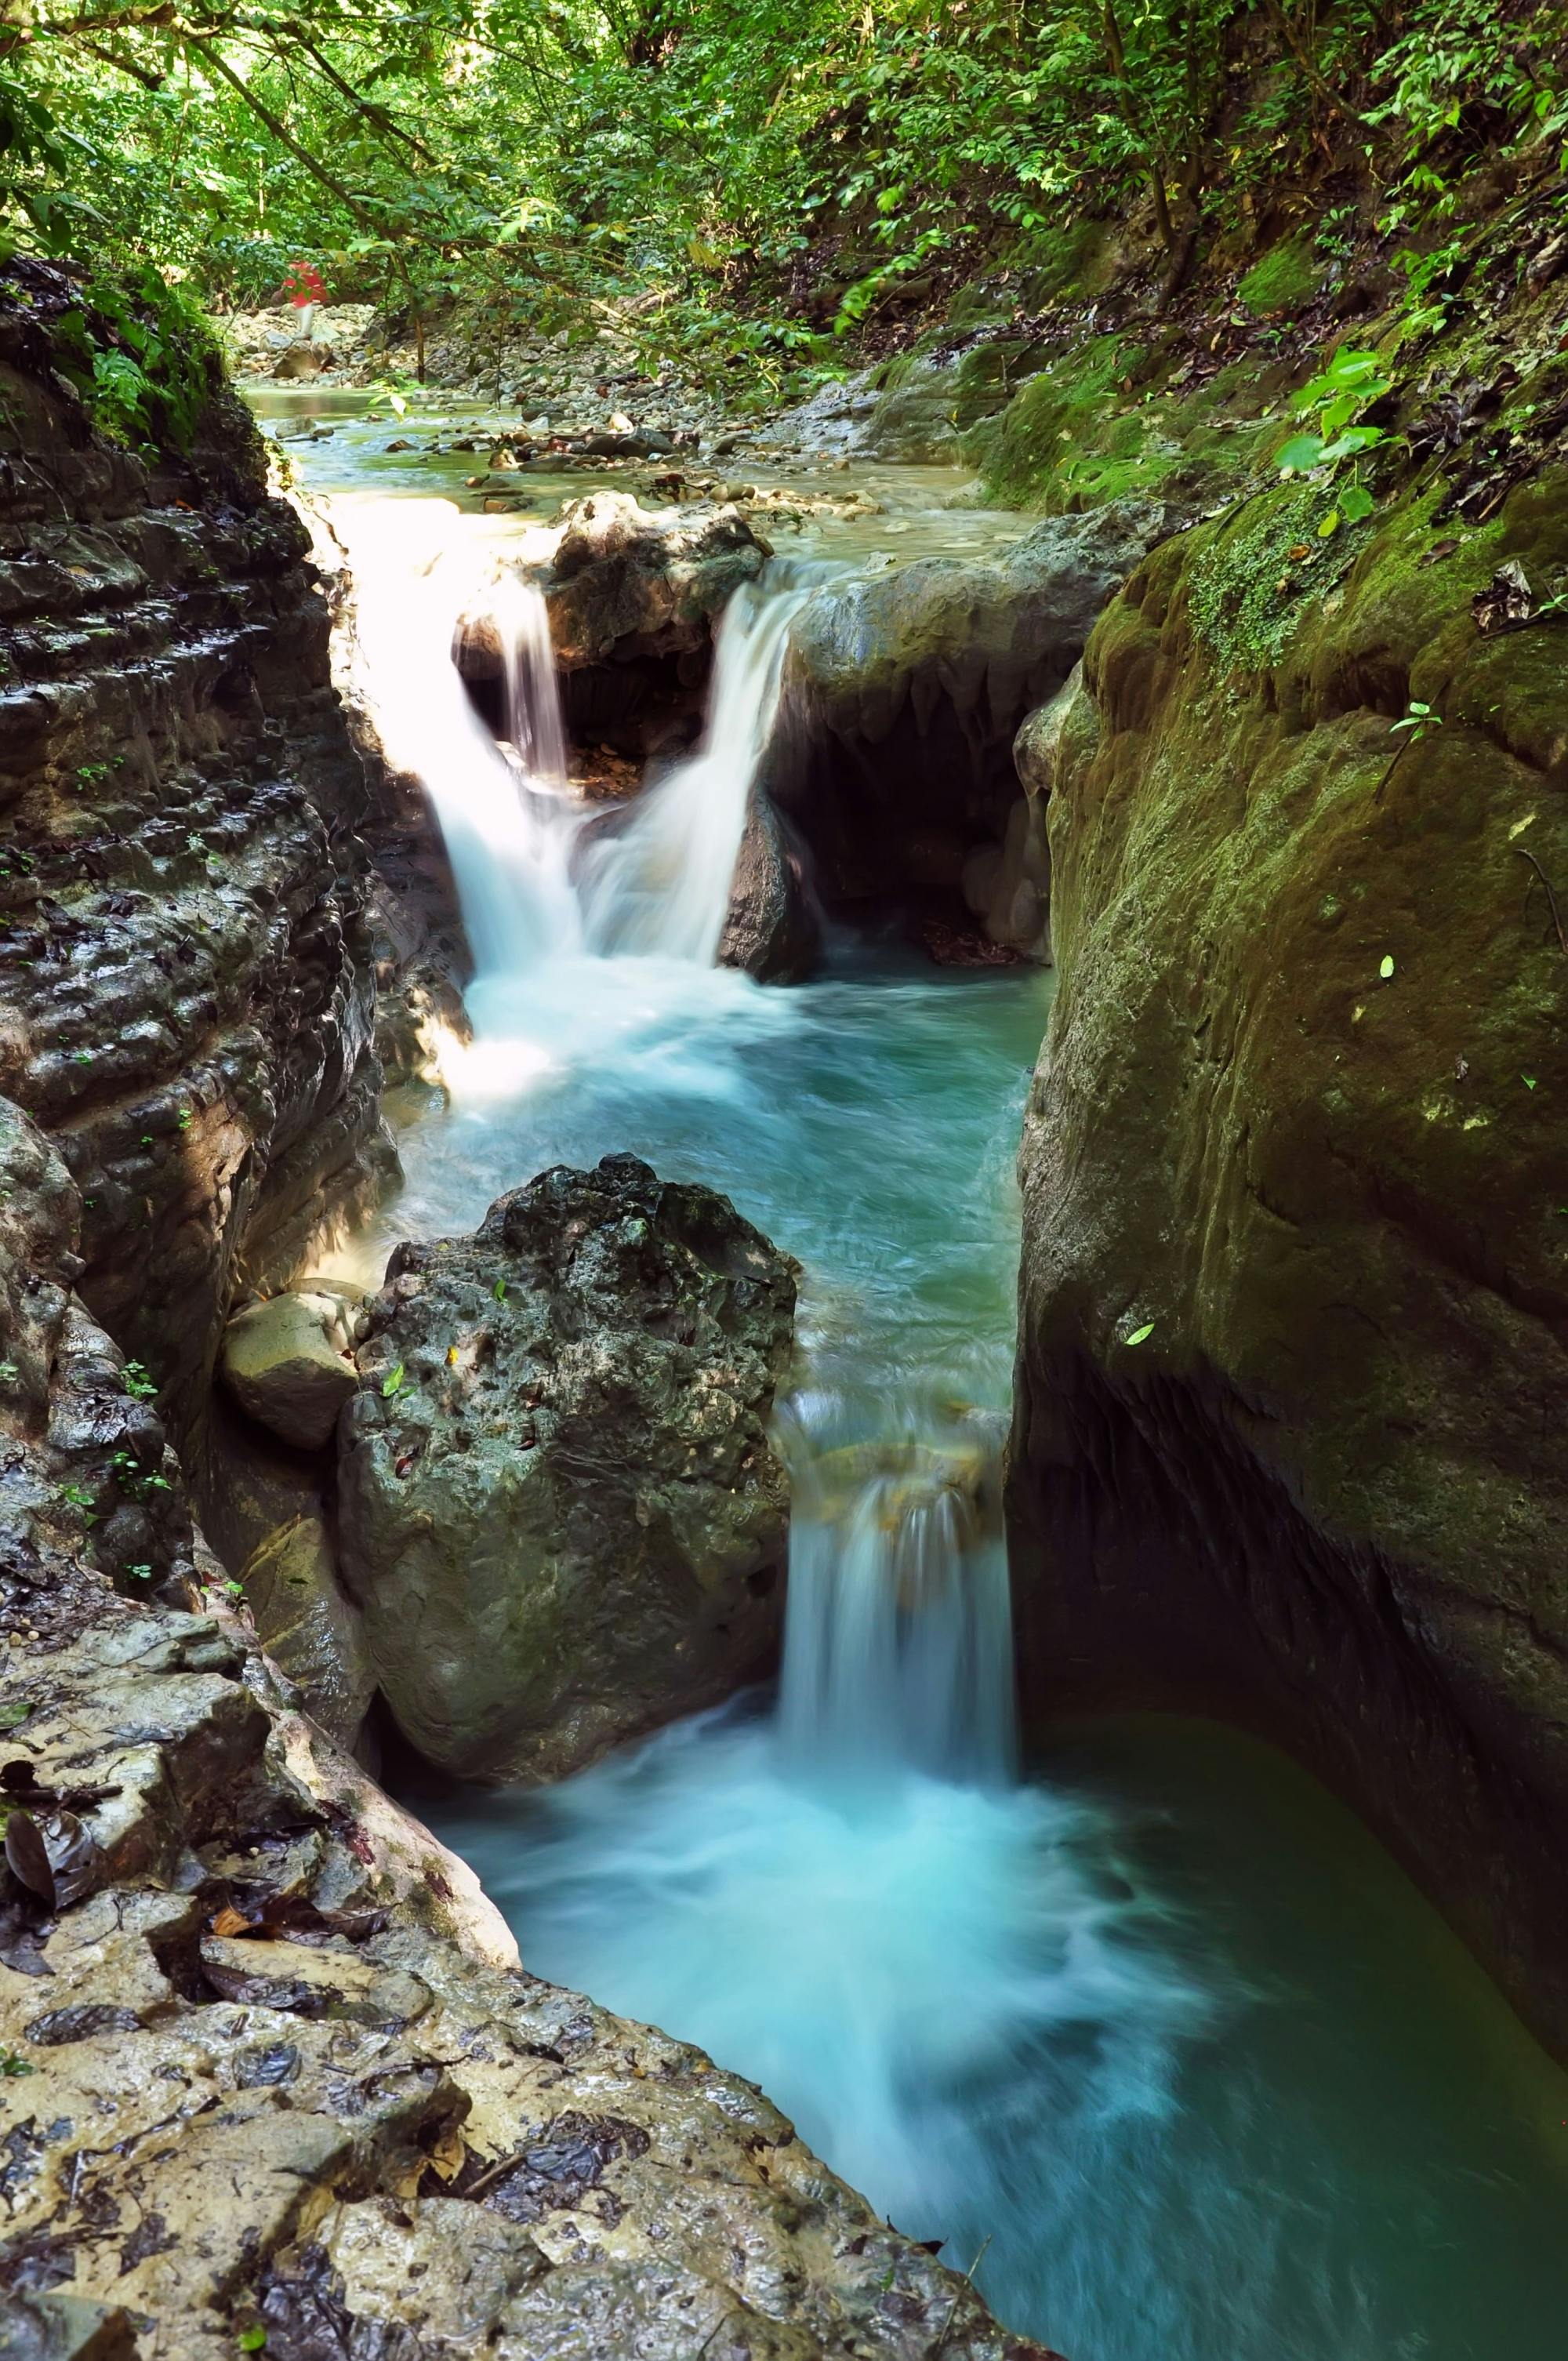 Monkey Land & Damajagua Waterfalls